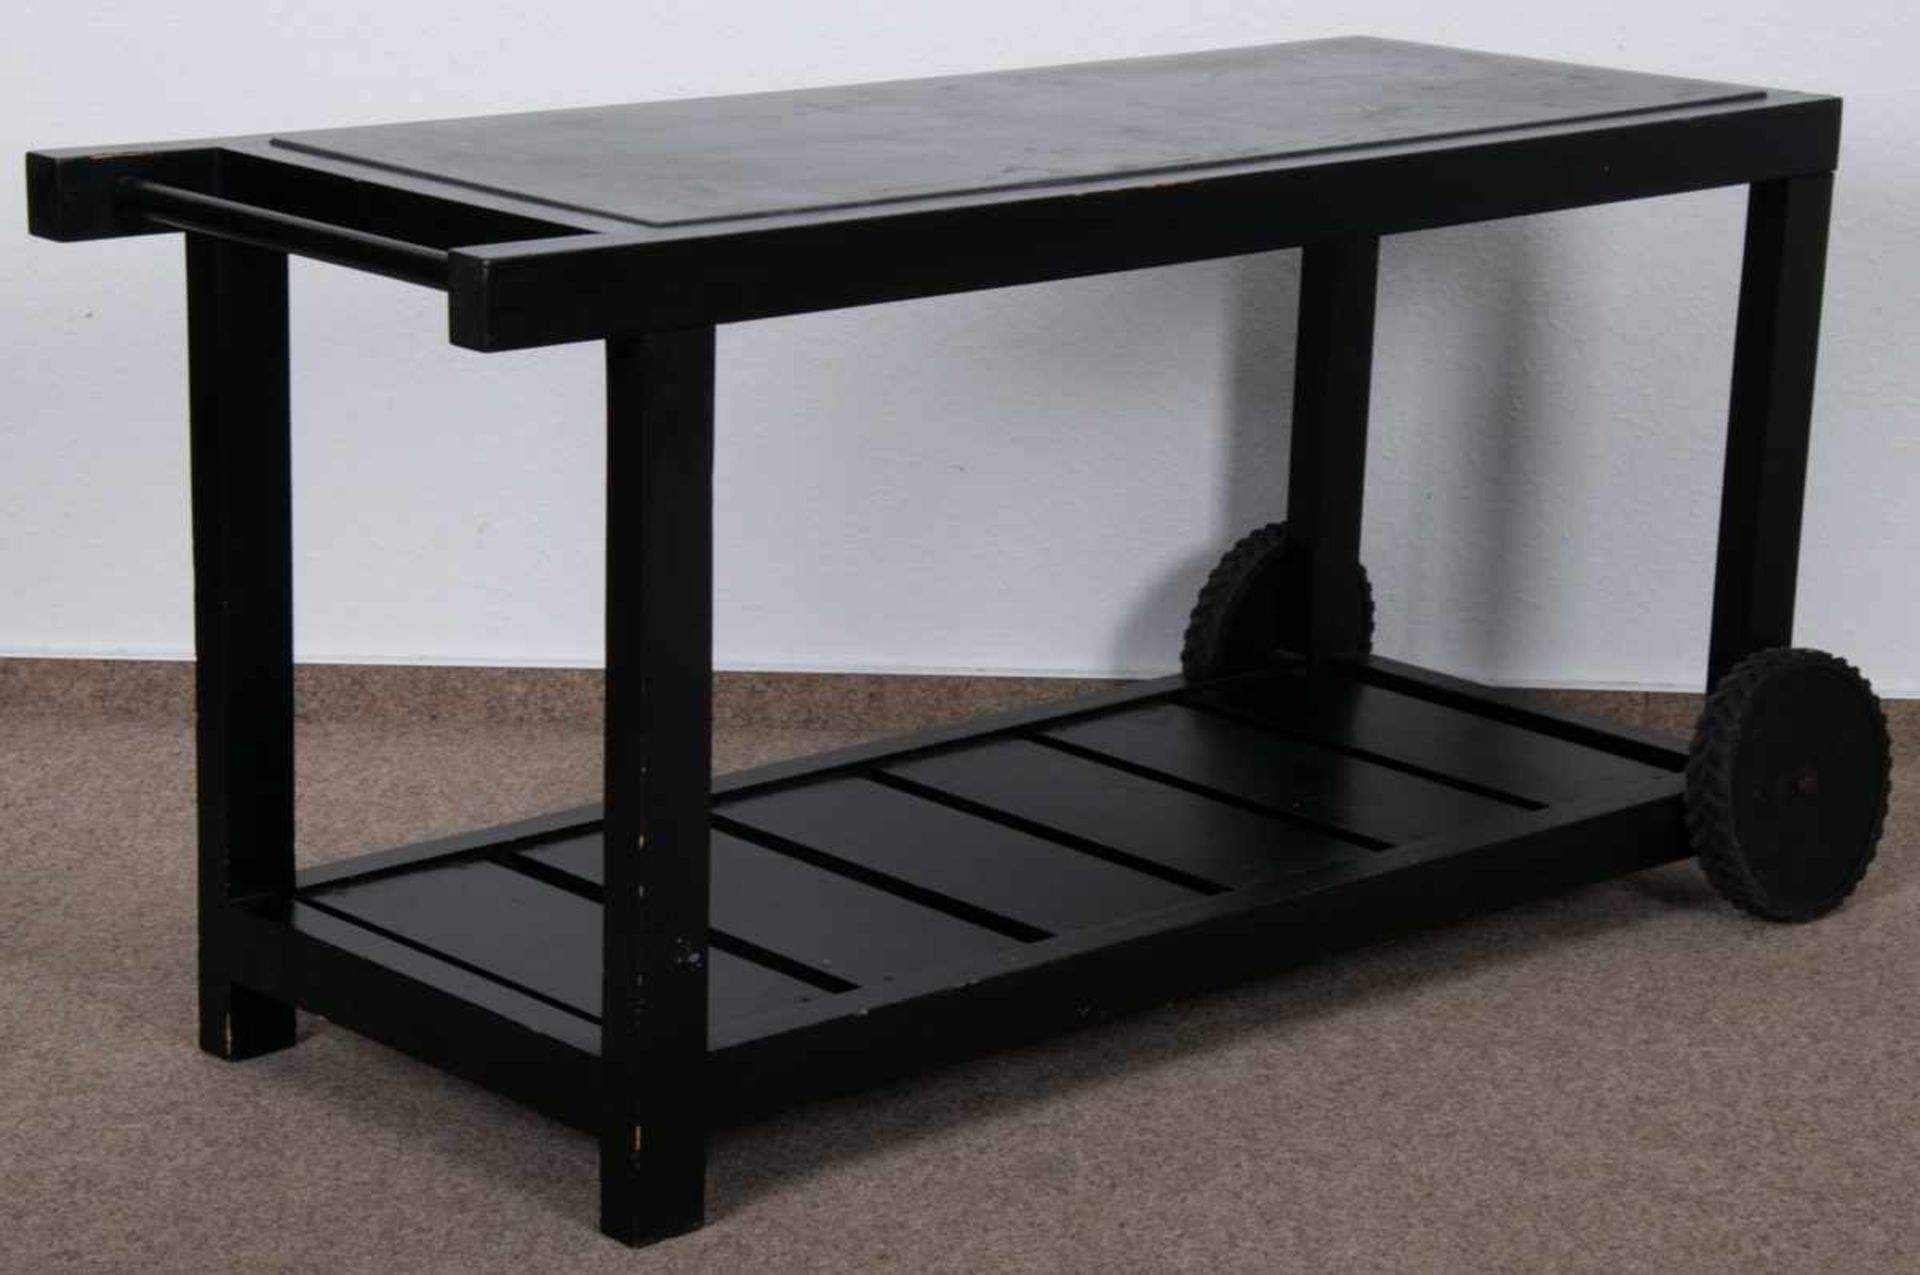 Rollbarer Gartentisch, schwarz lackiertes Nadelholz auf Kunststoffrollen gelagert/bedingt beweglich, - Bild 2 aus 6